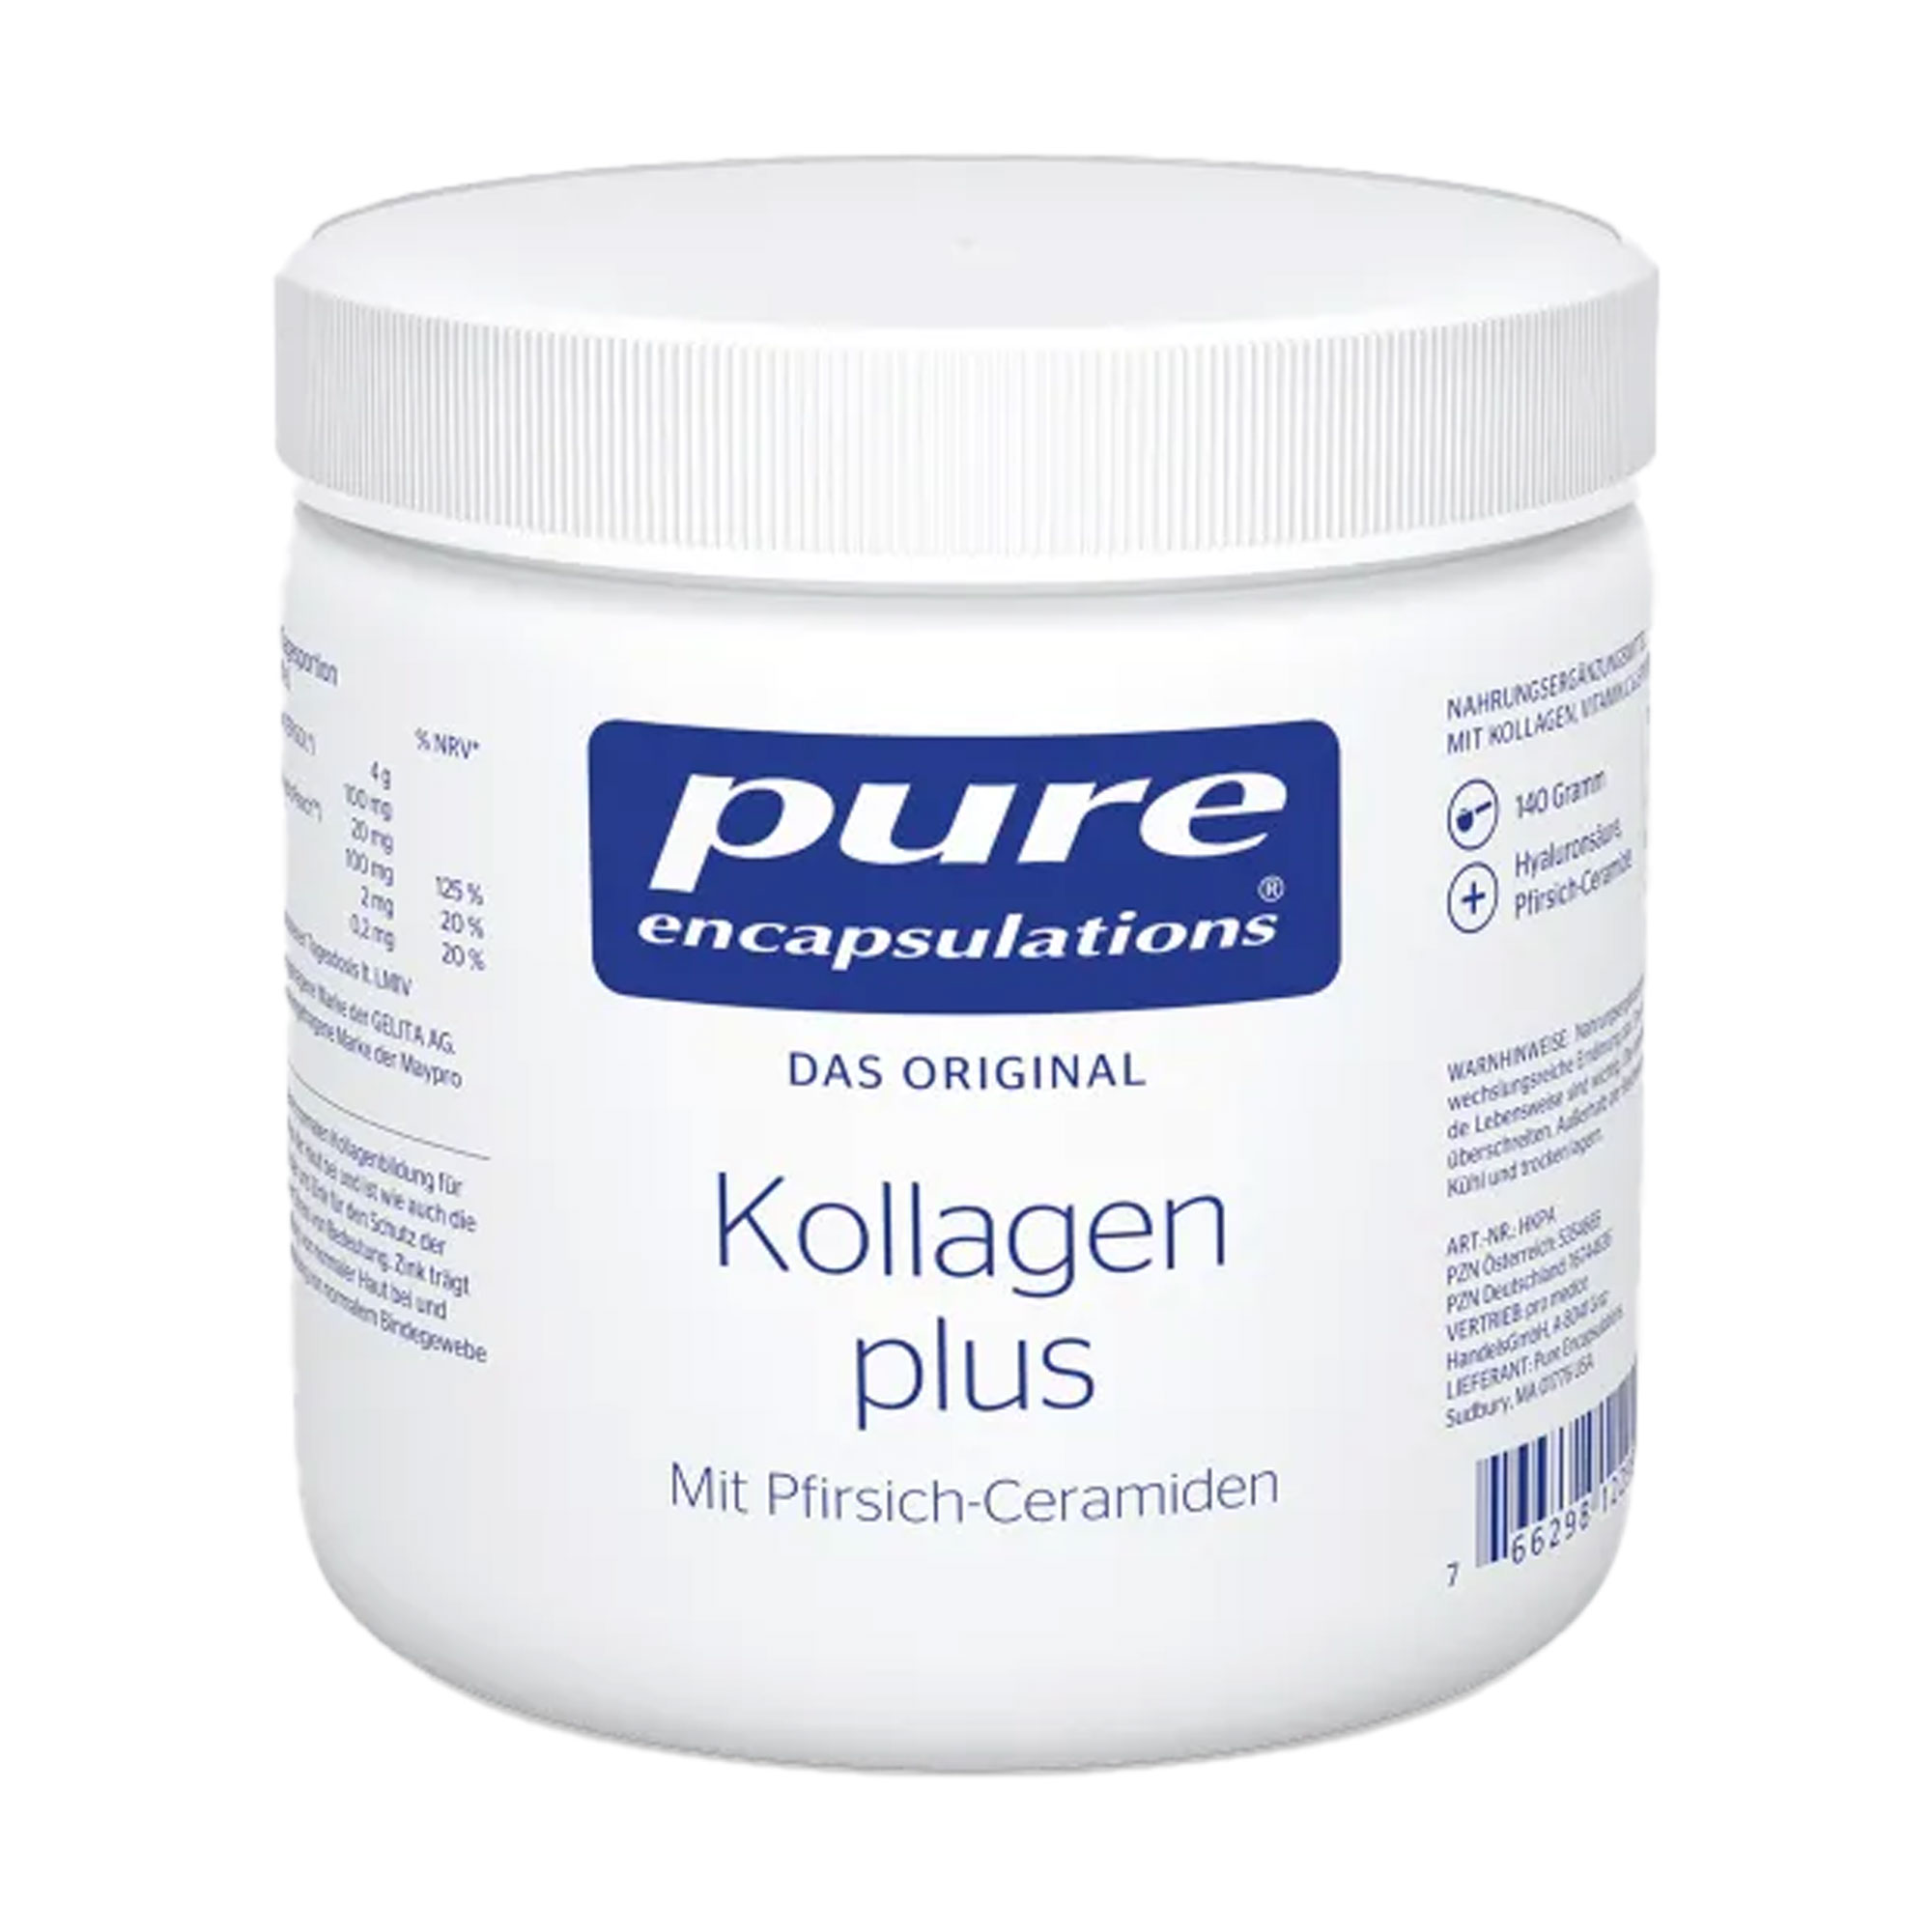 Kollagen-Pulver mit dem Plus an Hyaluronsäure, Antioxidanzien und natürlichen Pfirsich-Ceramiden.